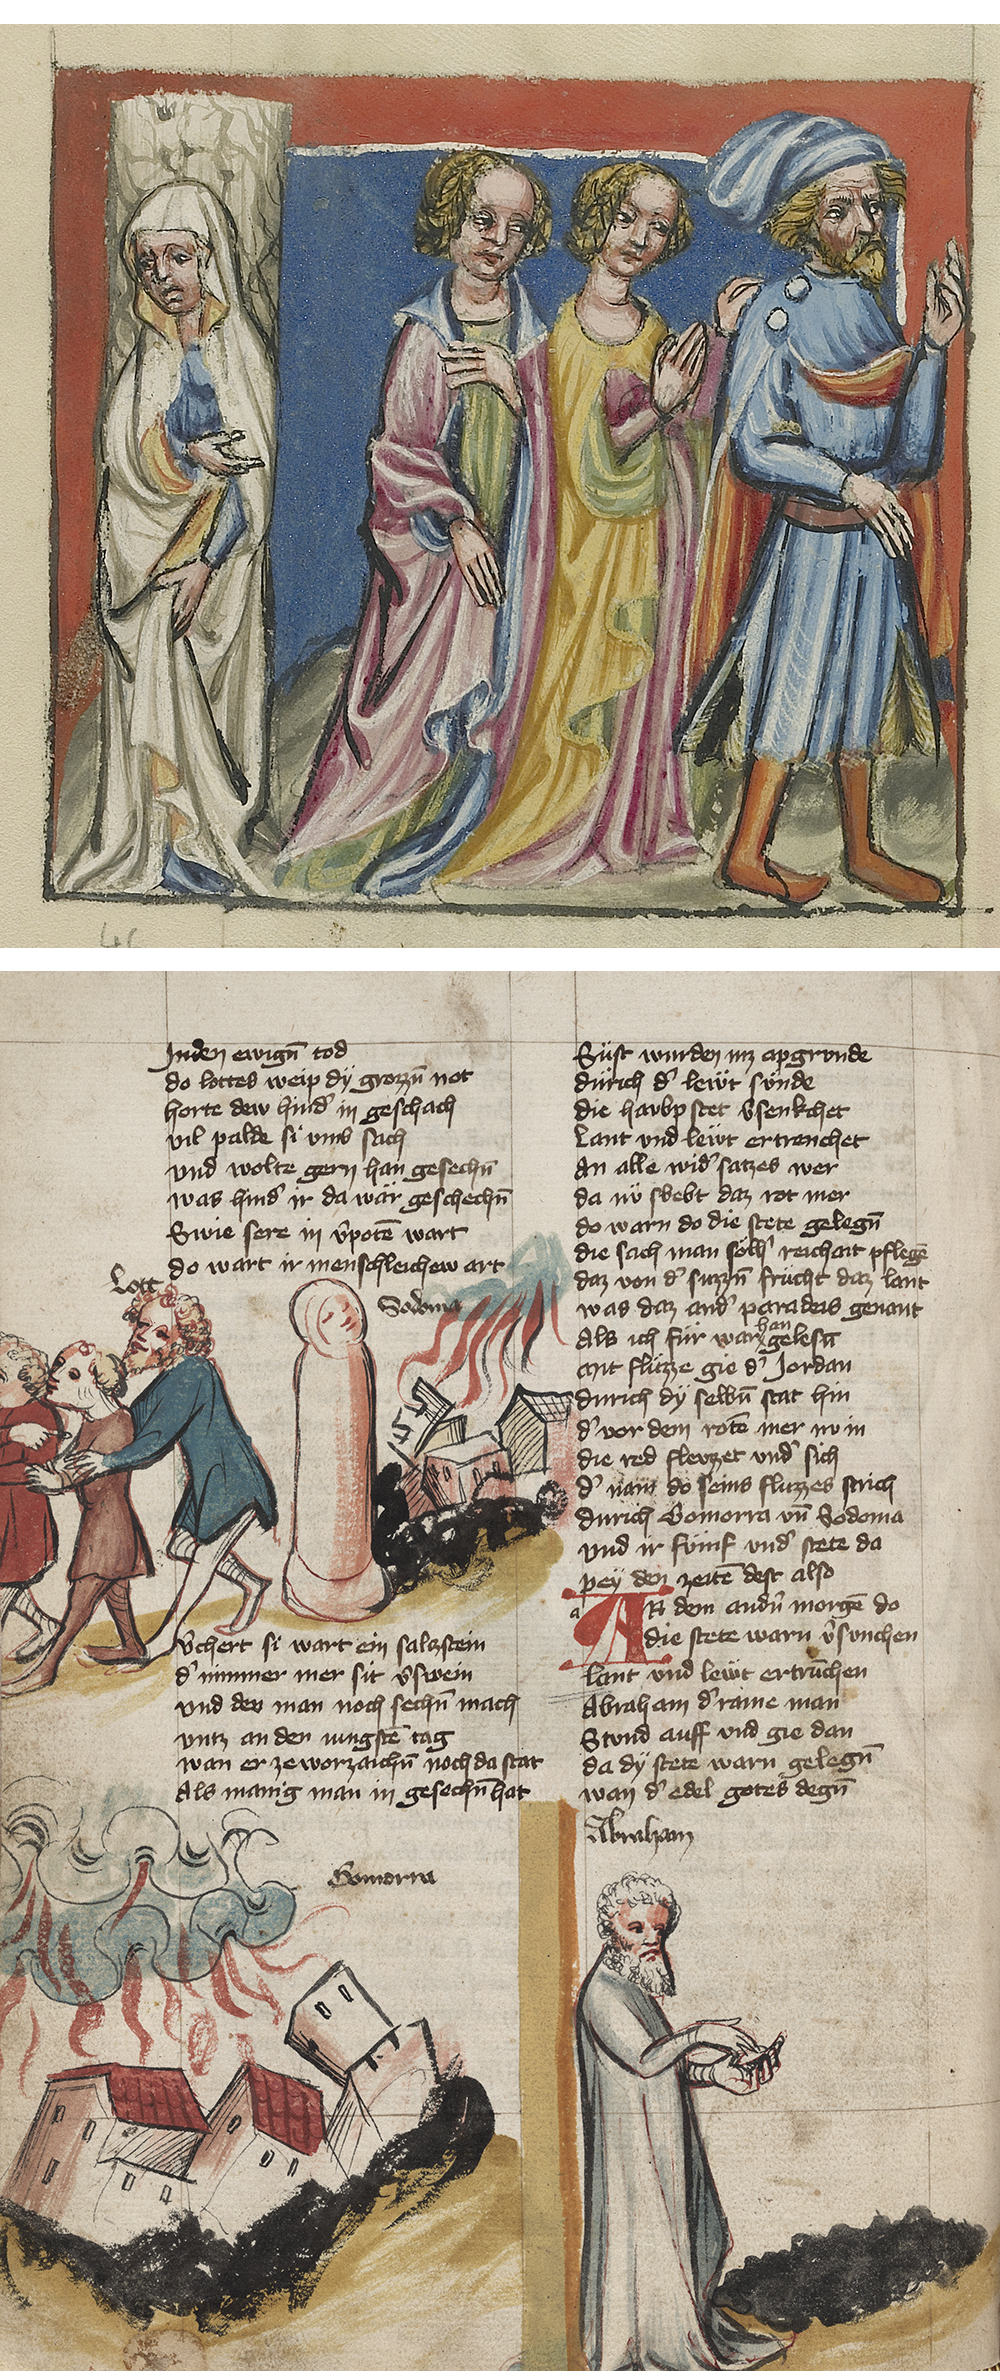 Top: Lot’s Wife Becomes a Pillar of Salt, by Rudolf von Ems, c. 1400. Bottom: Page from Weltchronik, by Rudolf von Ems, 1402.